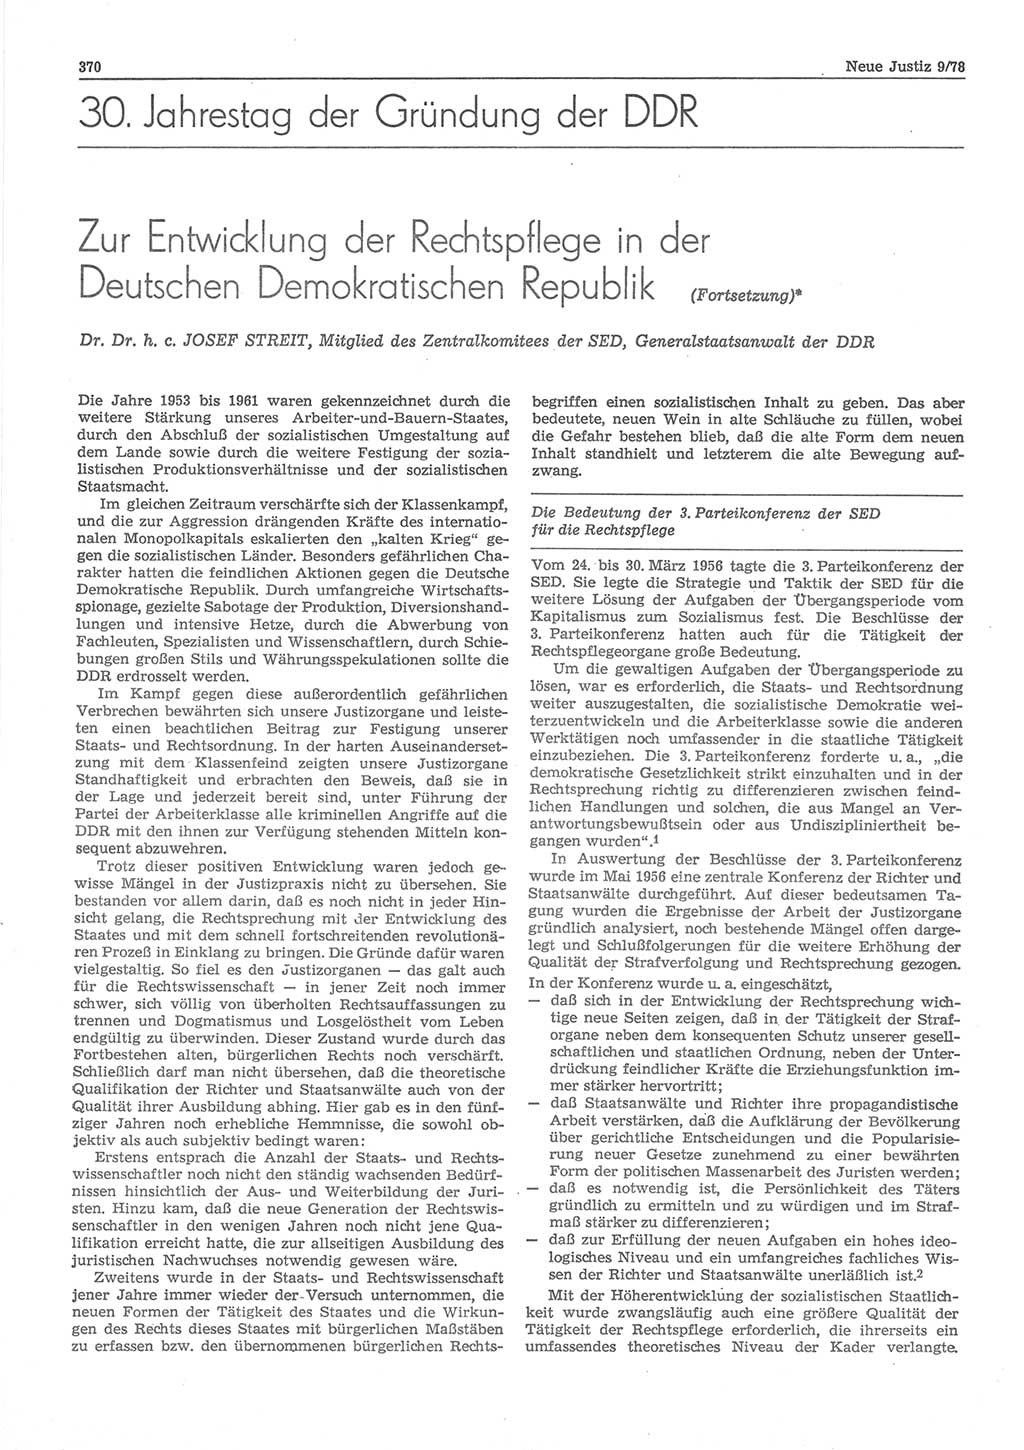 Neue Justiz (NJ), Zeitschrift für sozialistisches Recht und Gesetzlichkeit [Deutsche Demokratische Republik (DDR)], 32. Jahrgang 1978, Seite 370 (NJ DDR 1978, S. 370)